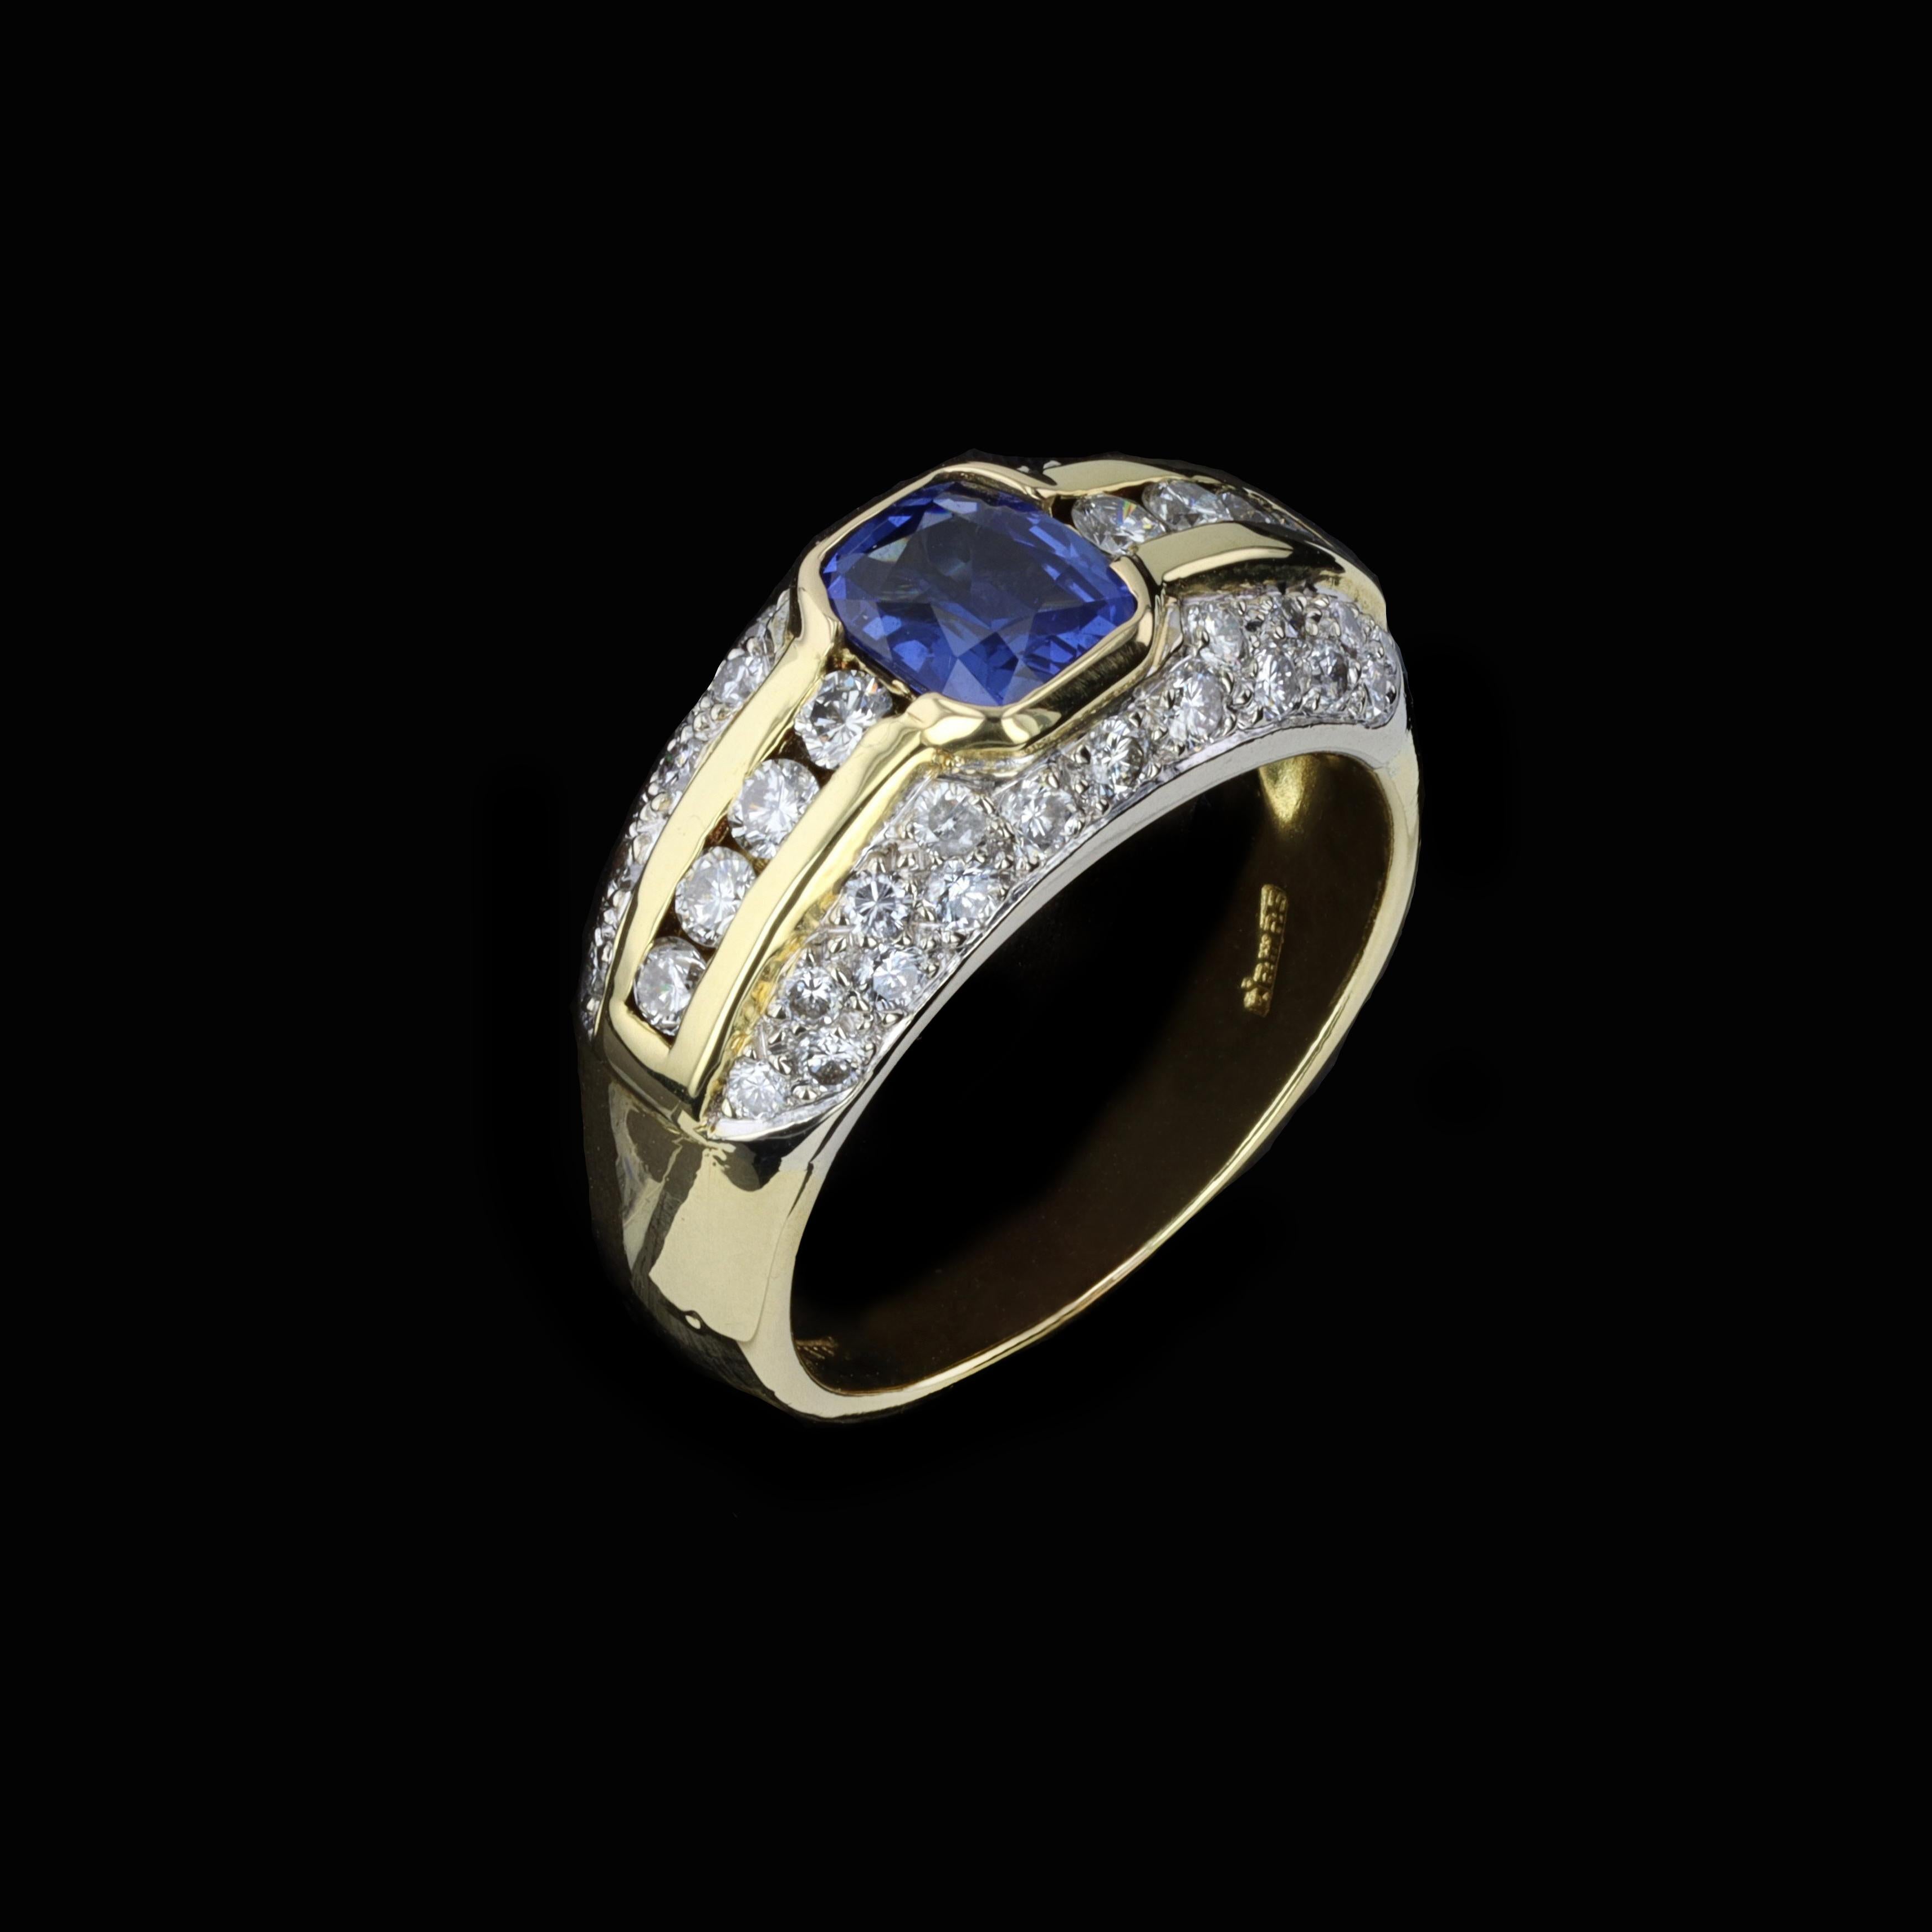 Estate Smaragdschliff Saphir und runder Brillant Diamant 18k Gelbgold Ring. Der Smaragdschliff-Saphir wiegt 1,06 ctw. Der Mittelstein wird durch schillernde, rund geschliffene Diamanten mit einem Gewicht von etwa 0,75 ct akzentuiert. Die Farbe